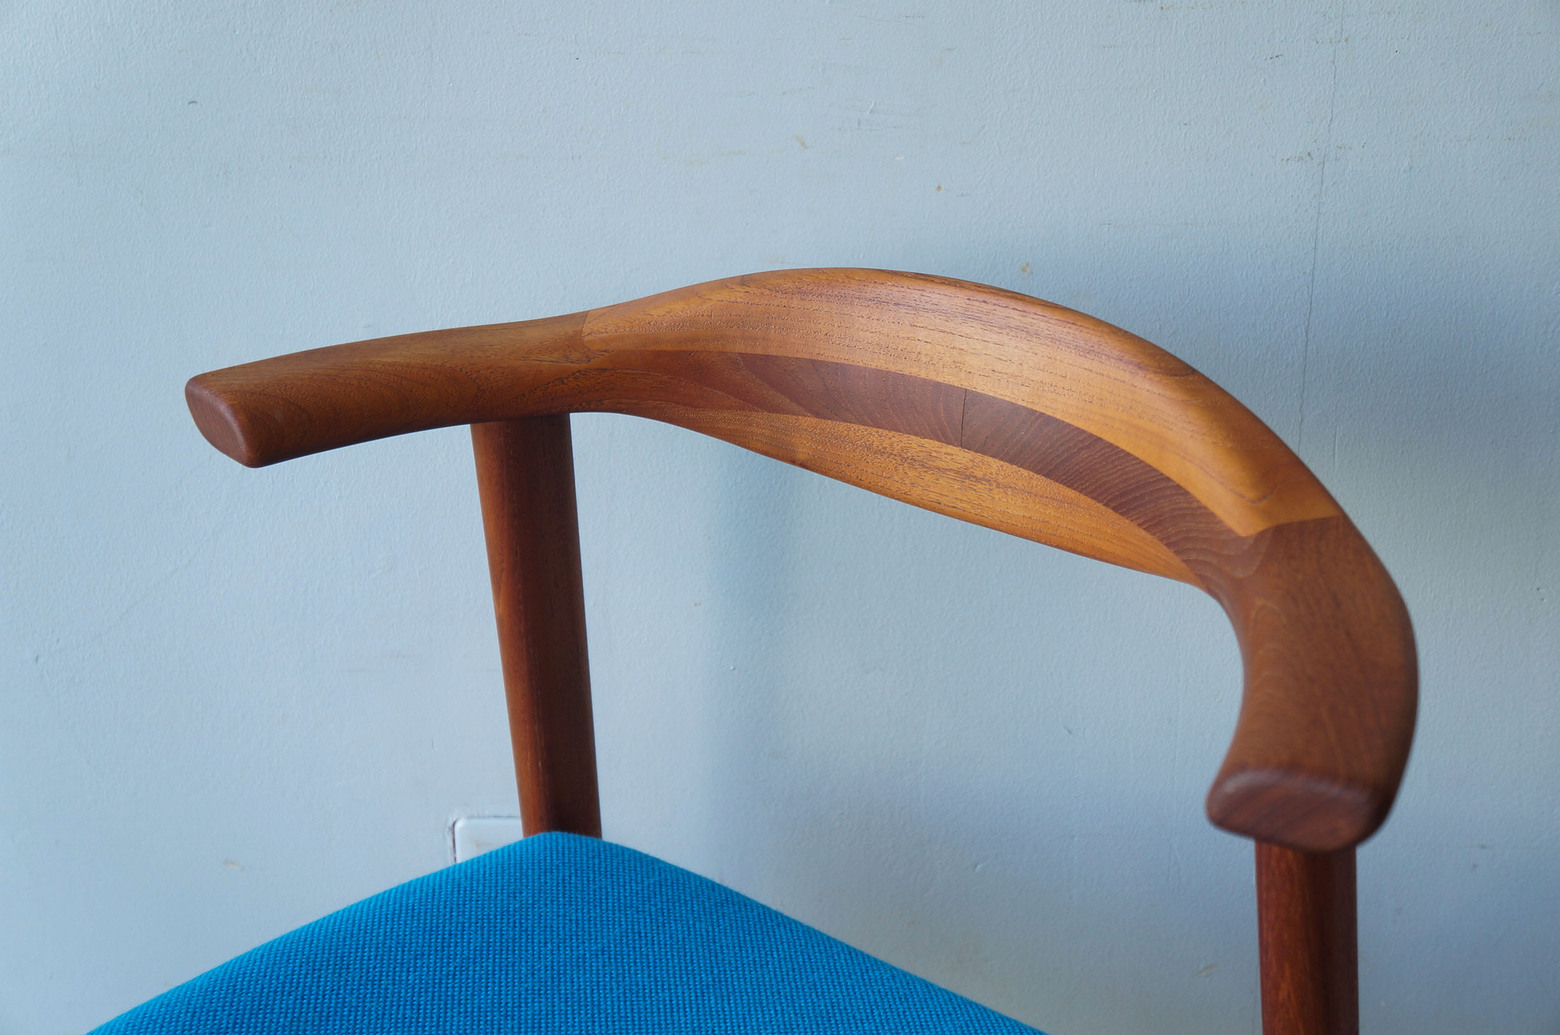 Japanese Vintage Aobayashi Dining Chair/ジャパンヴィンテージ 青林製作所 ダイニングチェア チーク材 椅子 北欧モダン 3